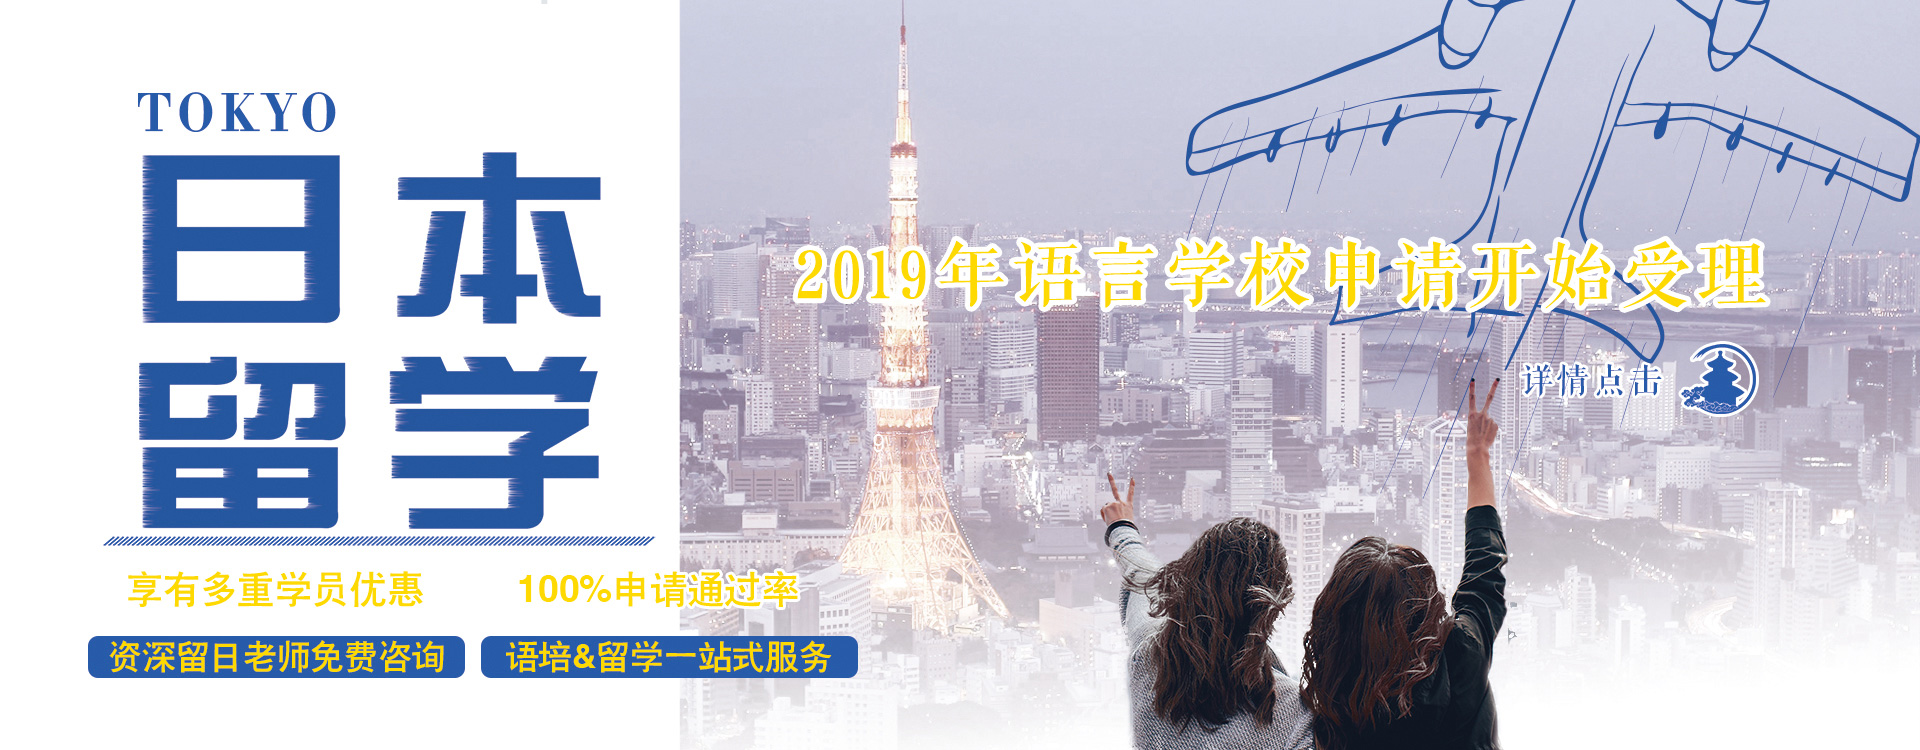 日本留学 咨询费免费 保证签证成功率